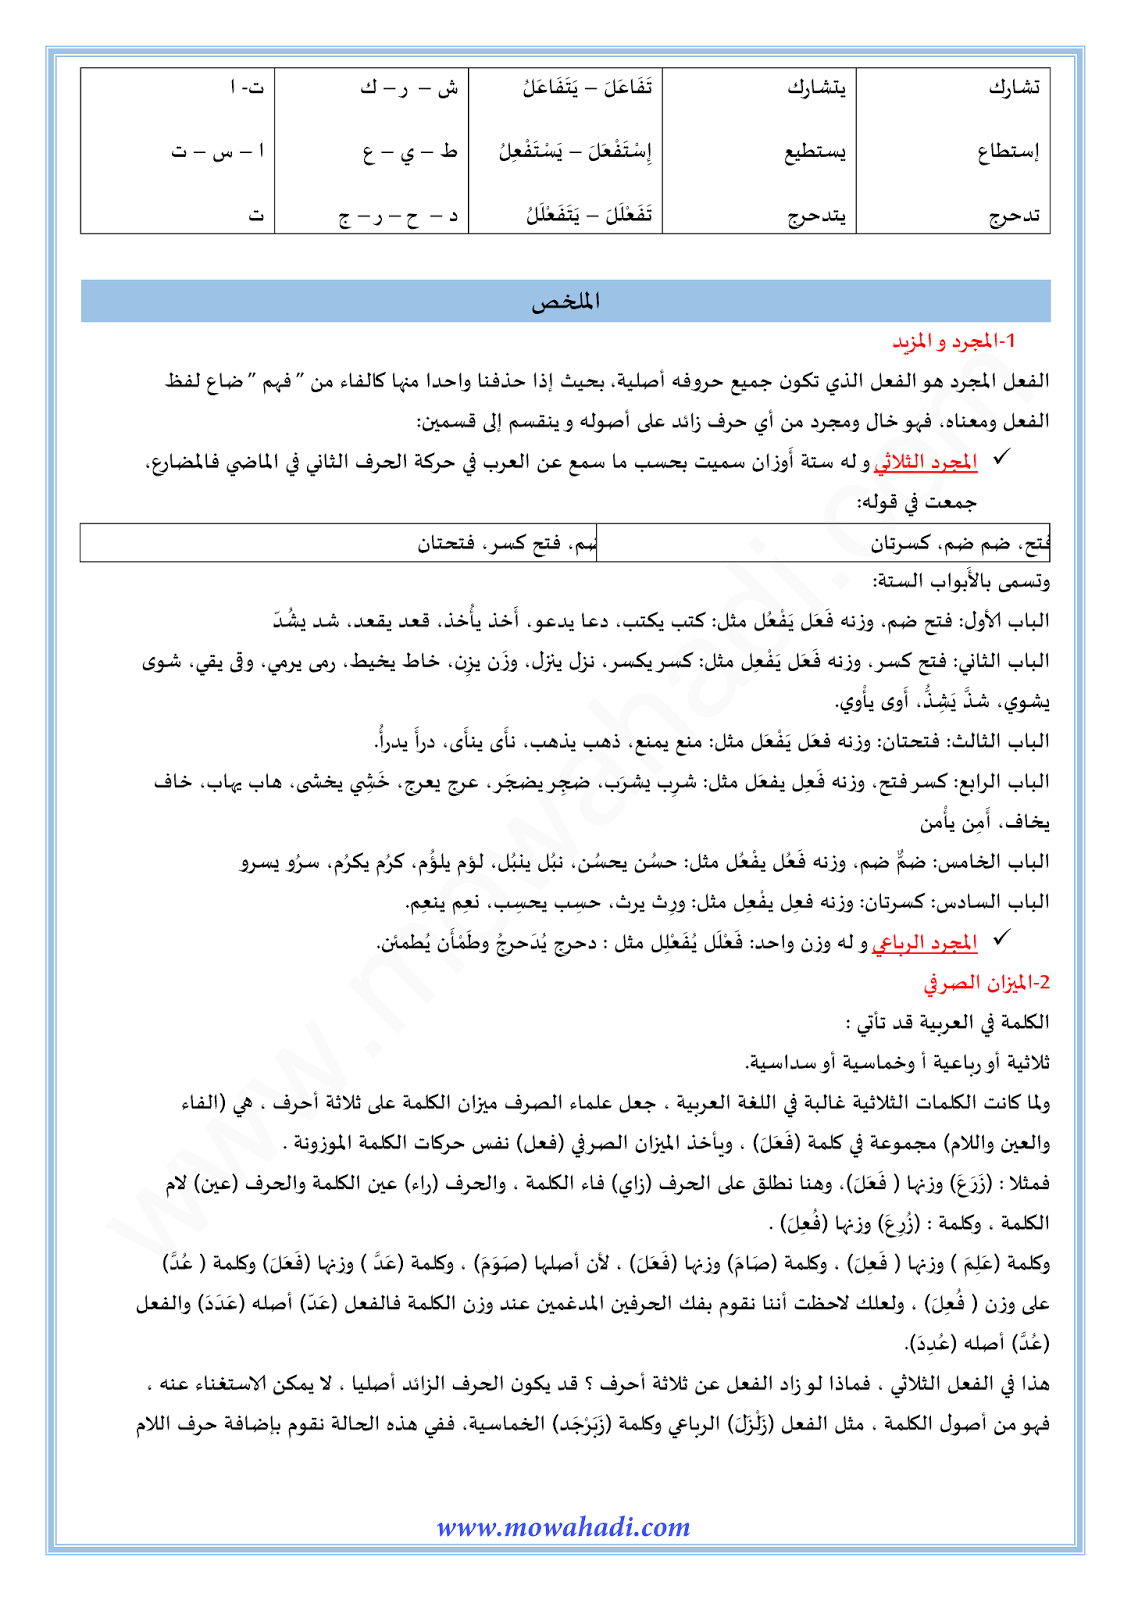 الدرس اللغوي الميزان الصرفي و المجرد و المزيد للسنة الأولى اعدادي في مادة اللغة العربية 1-cours-dars-loghawi1_002